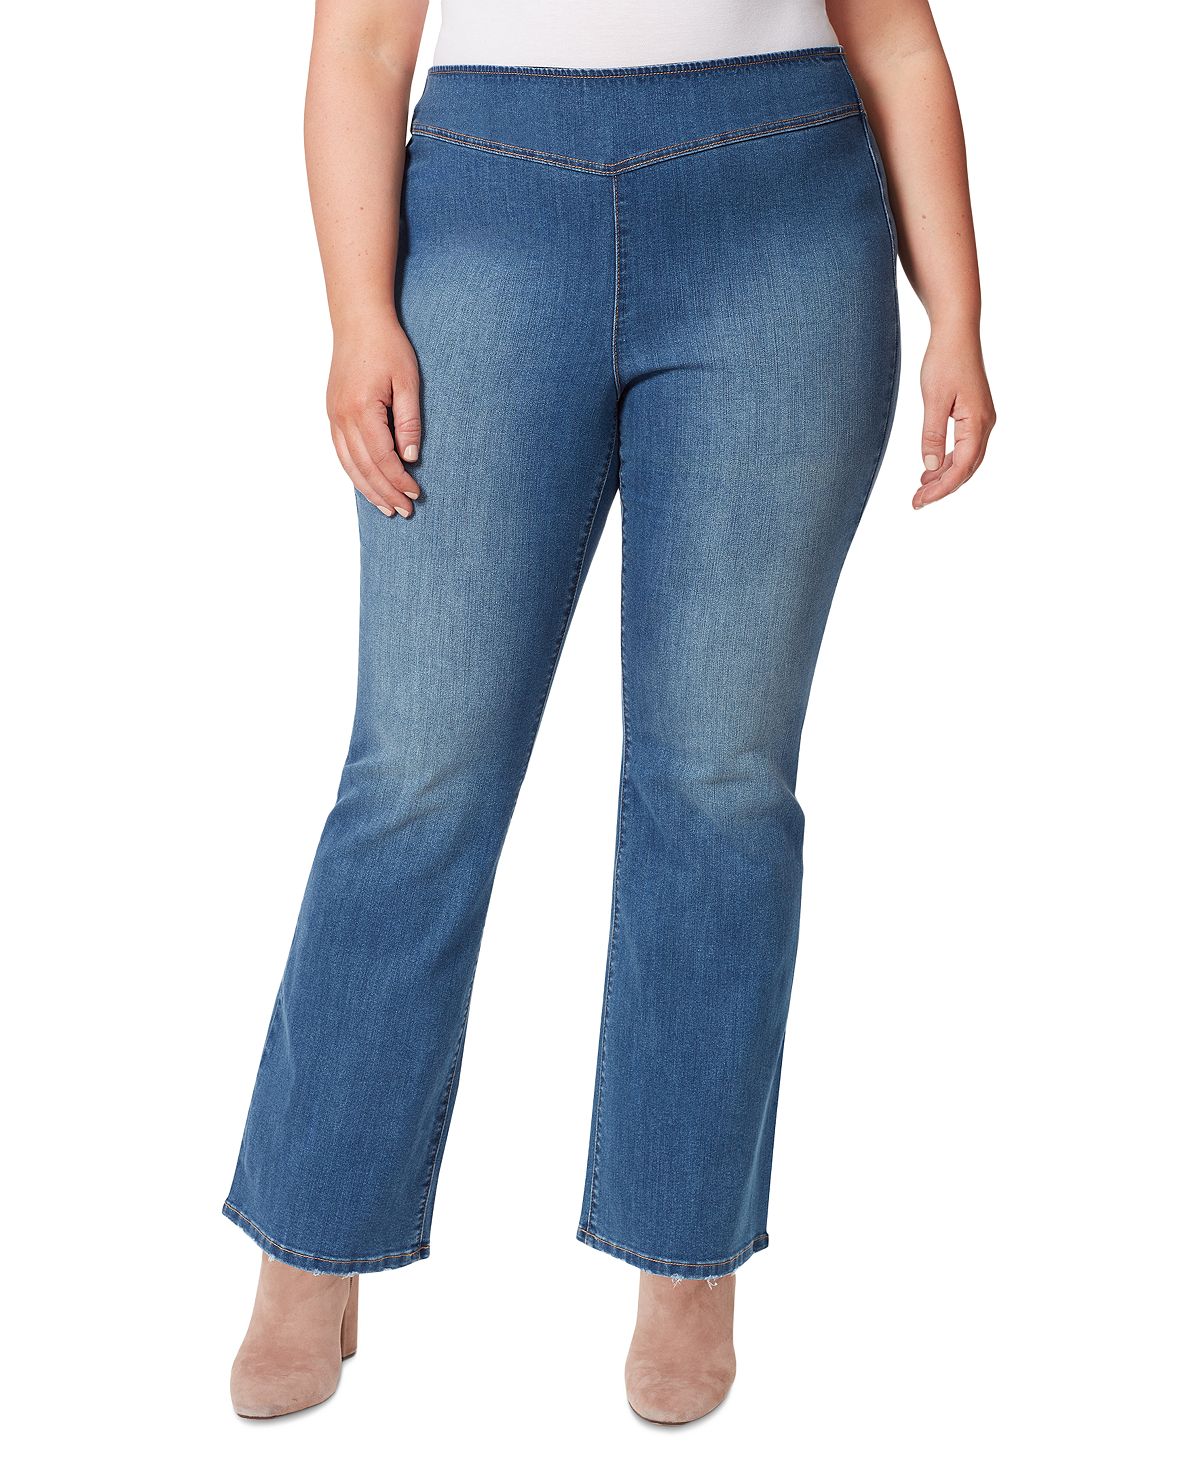 цена Модные расклешенные джинсы больших размеров Jessica Simpson